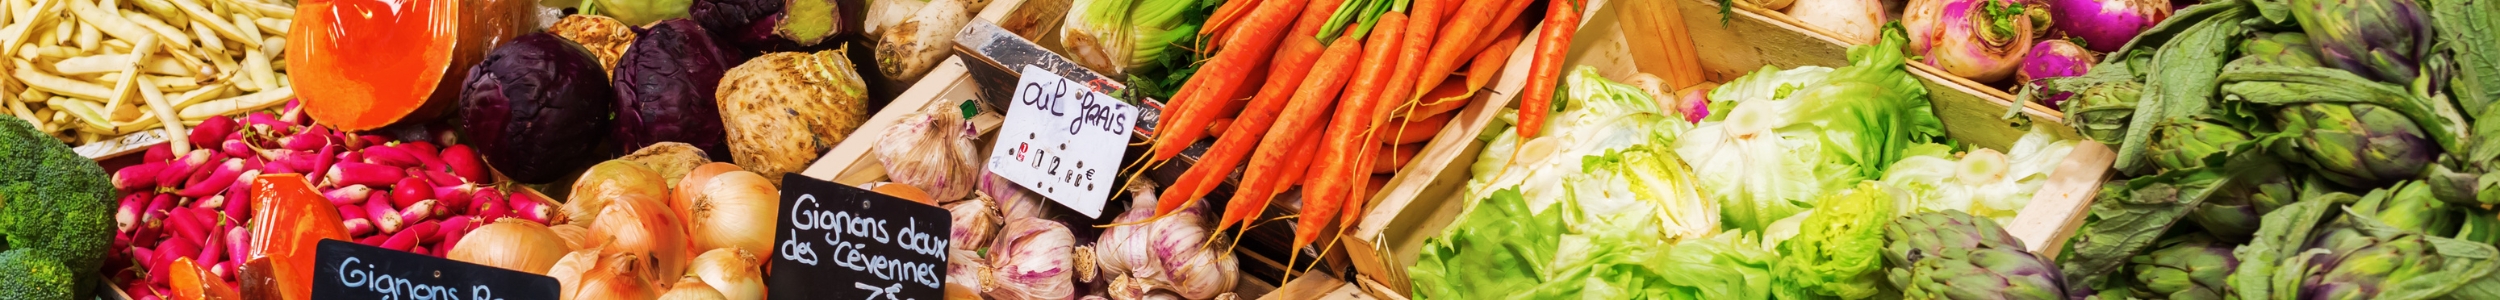 Image de fruits et légumes représentant le marché des producteurs locaux de Fleurus